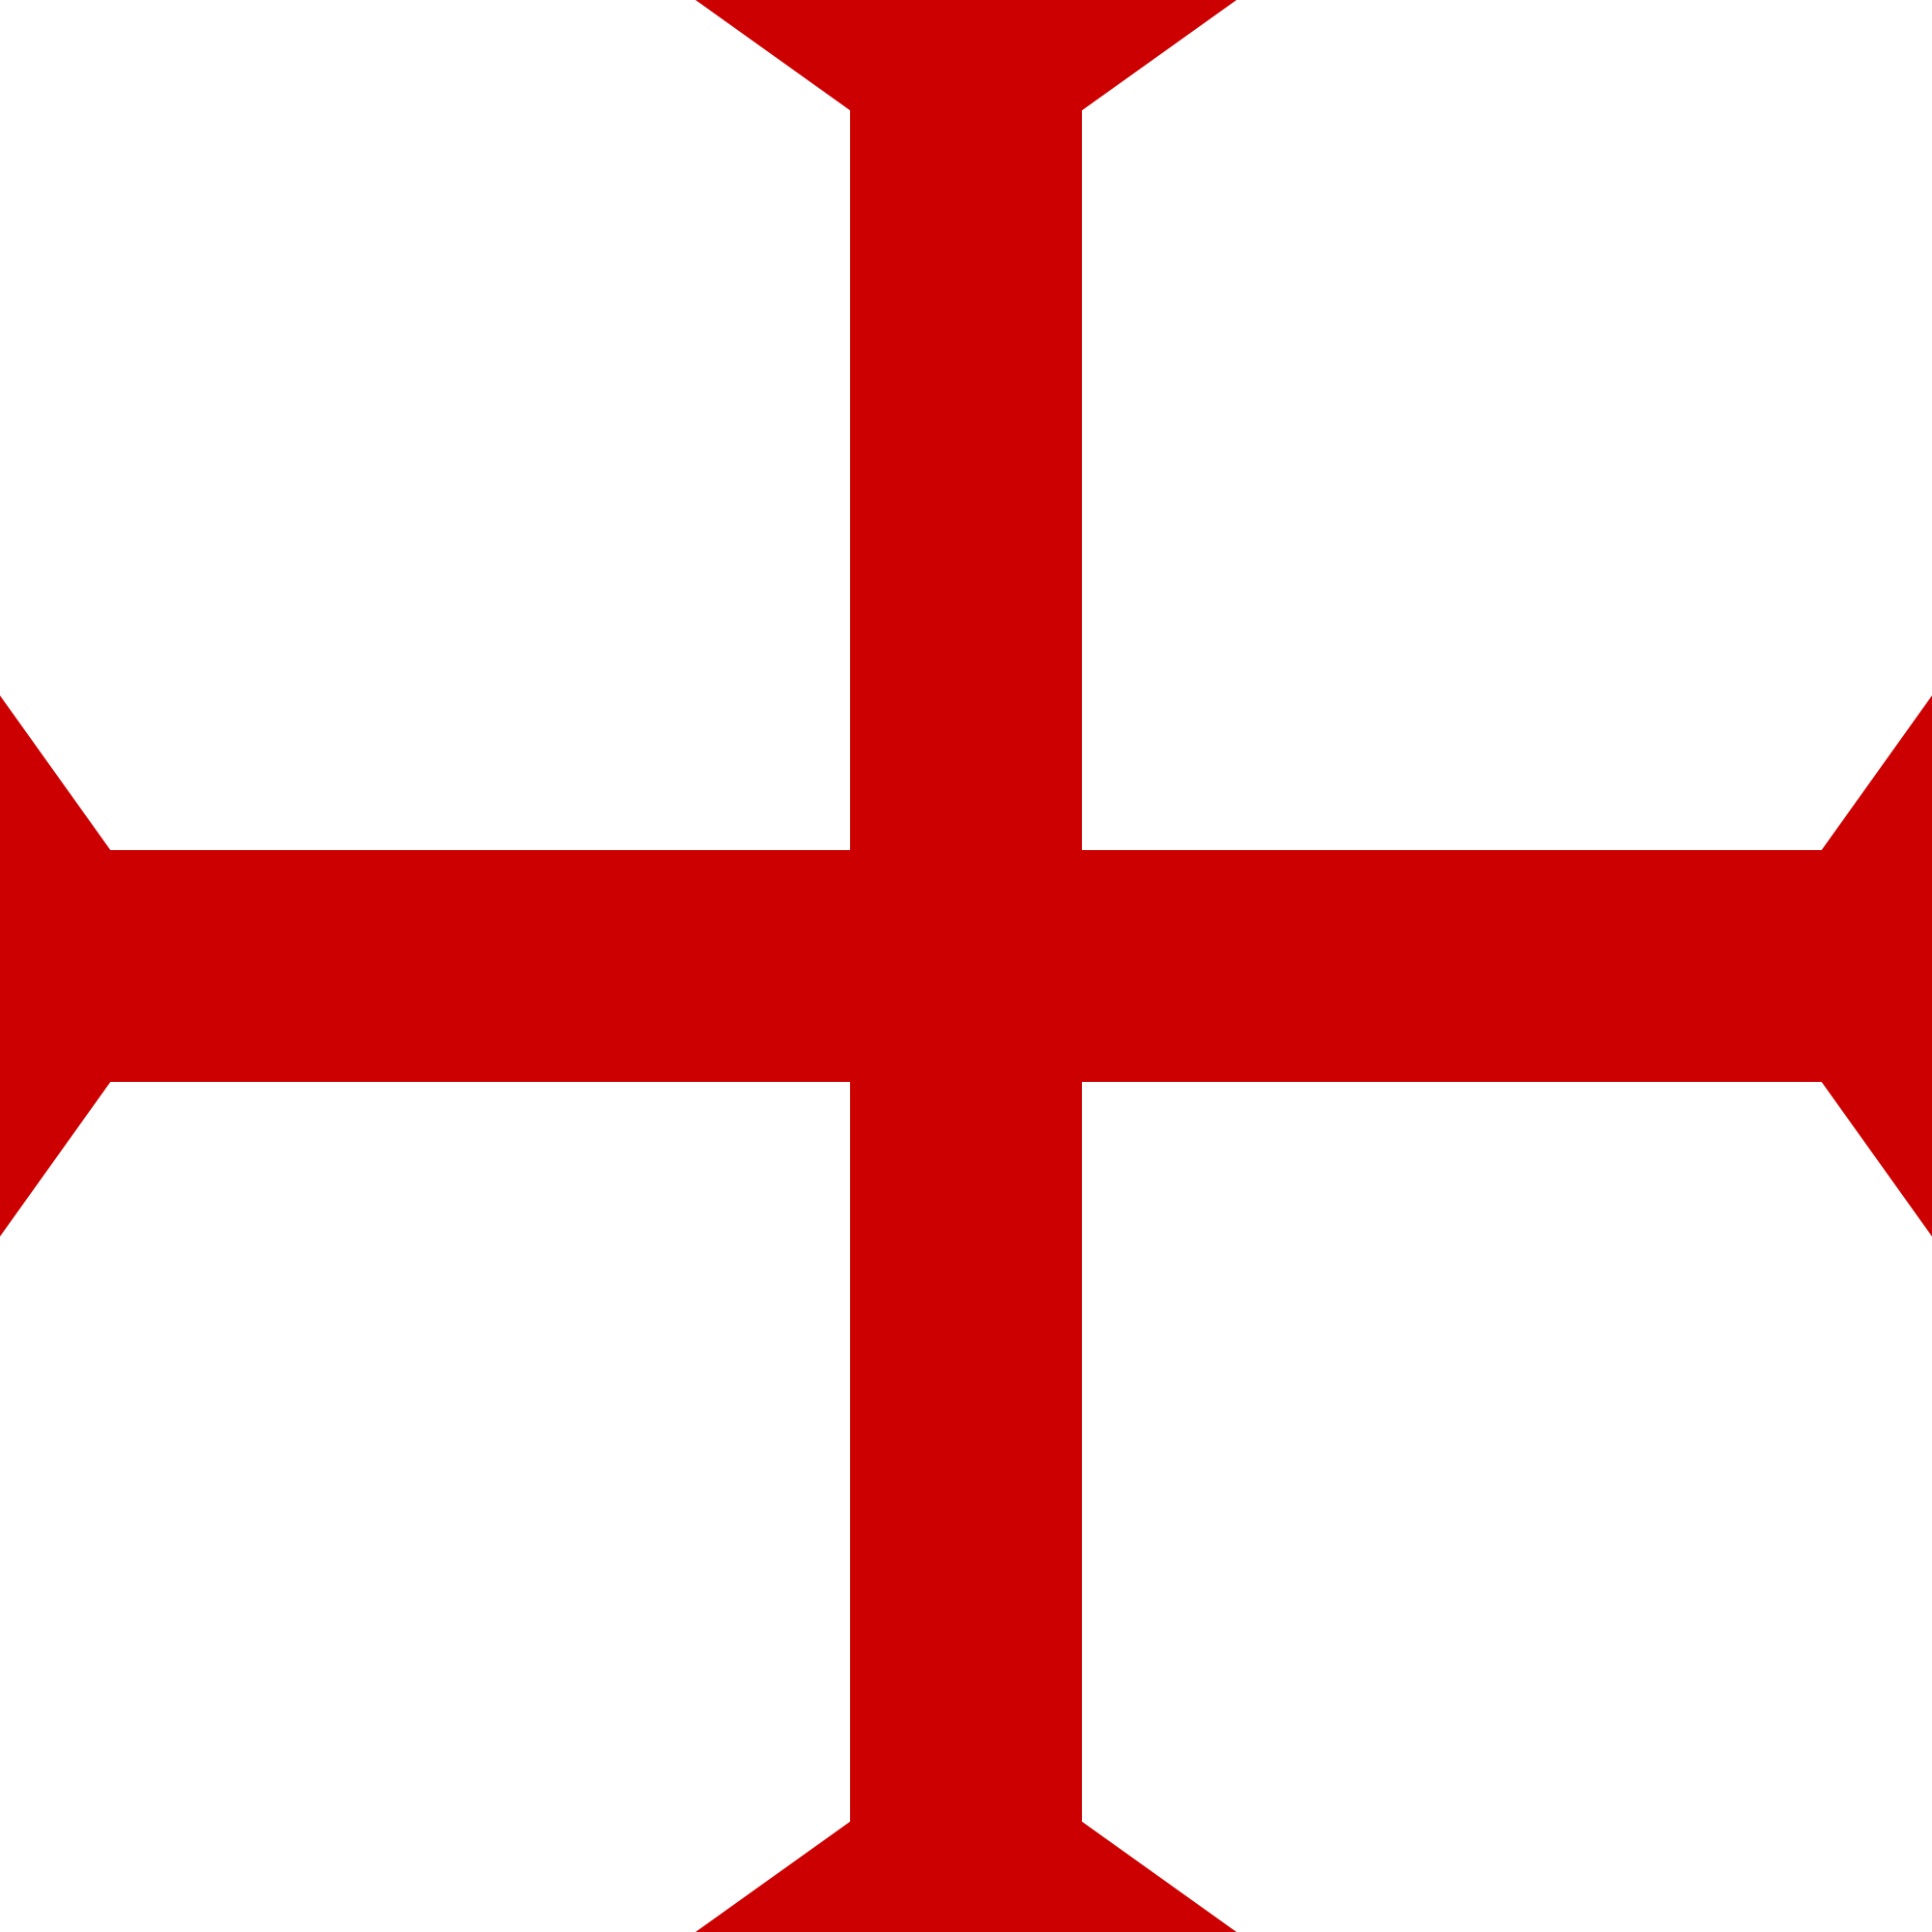 Image Result For Templar Cross - Knights Templar Cross (2000x2000)